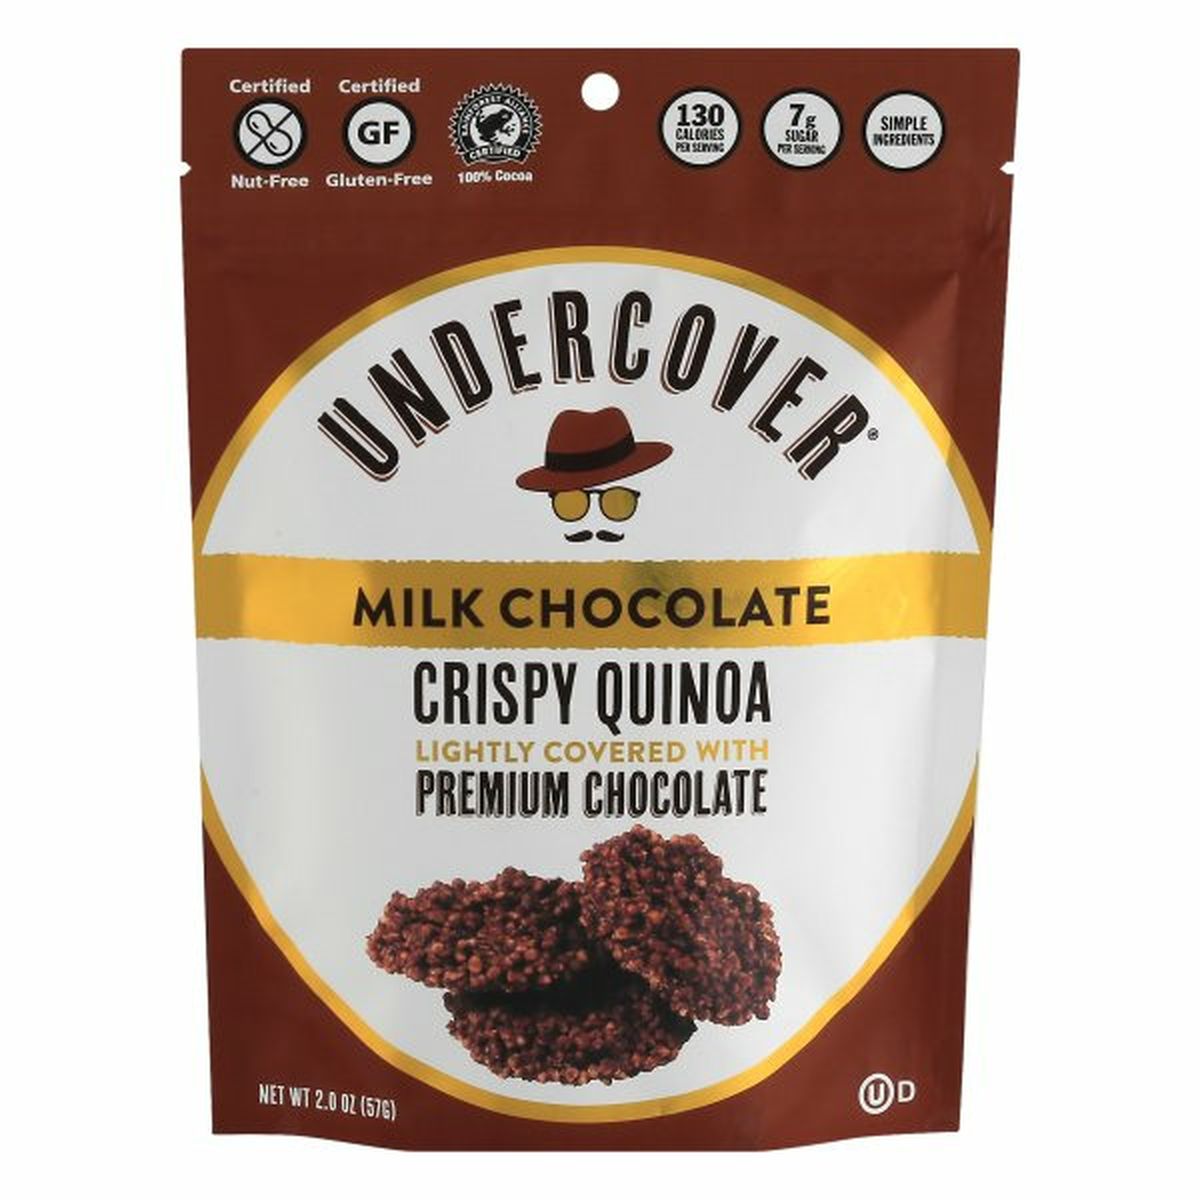 Calories in Undercover Crispy Quinoa, Milk Chocolate